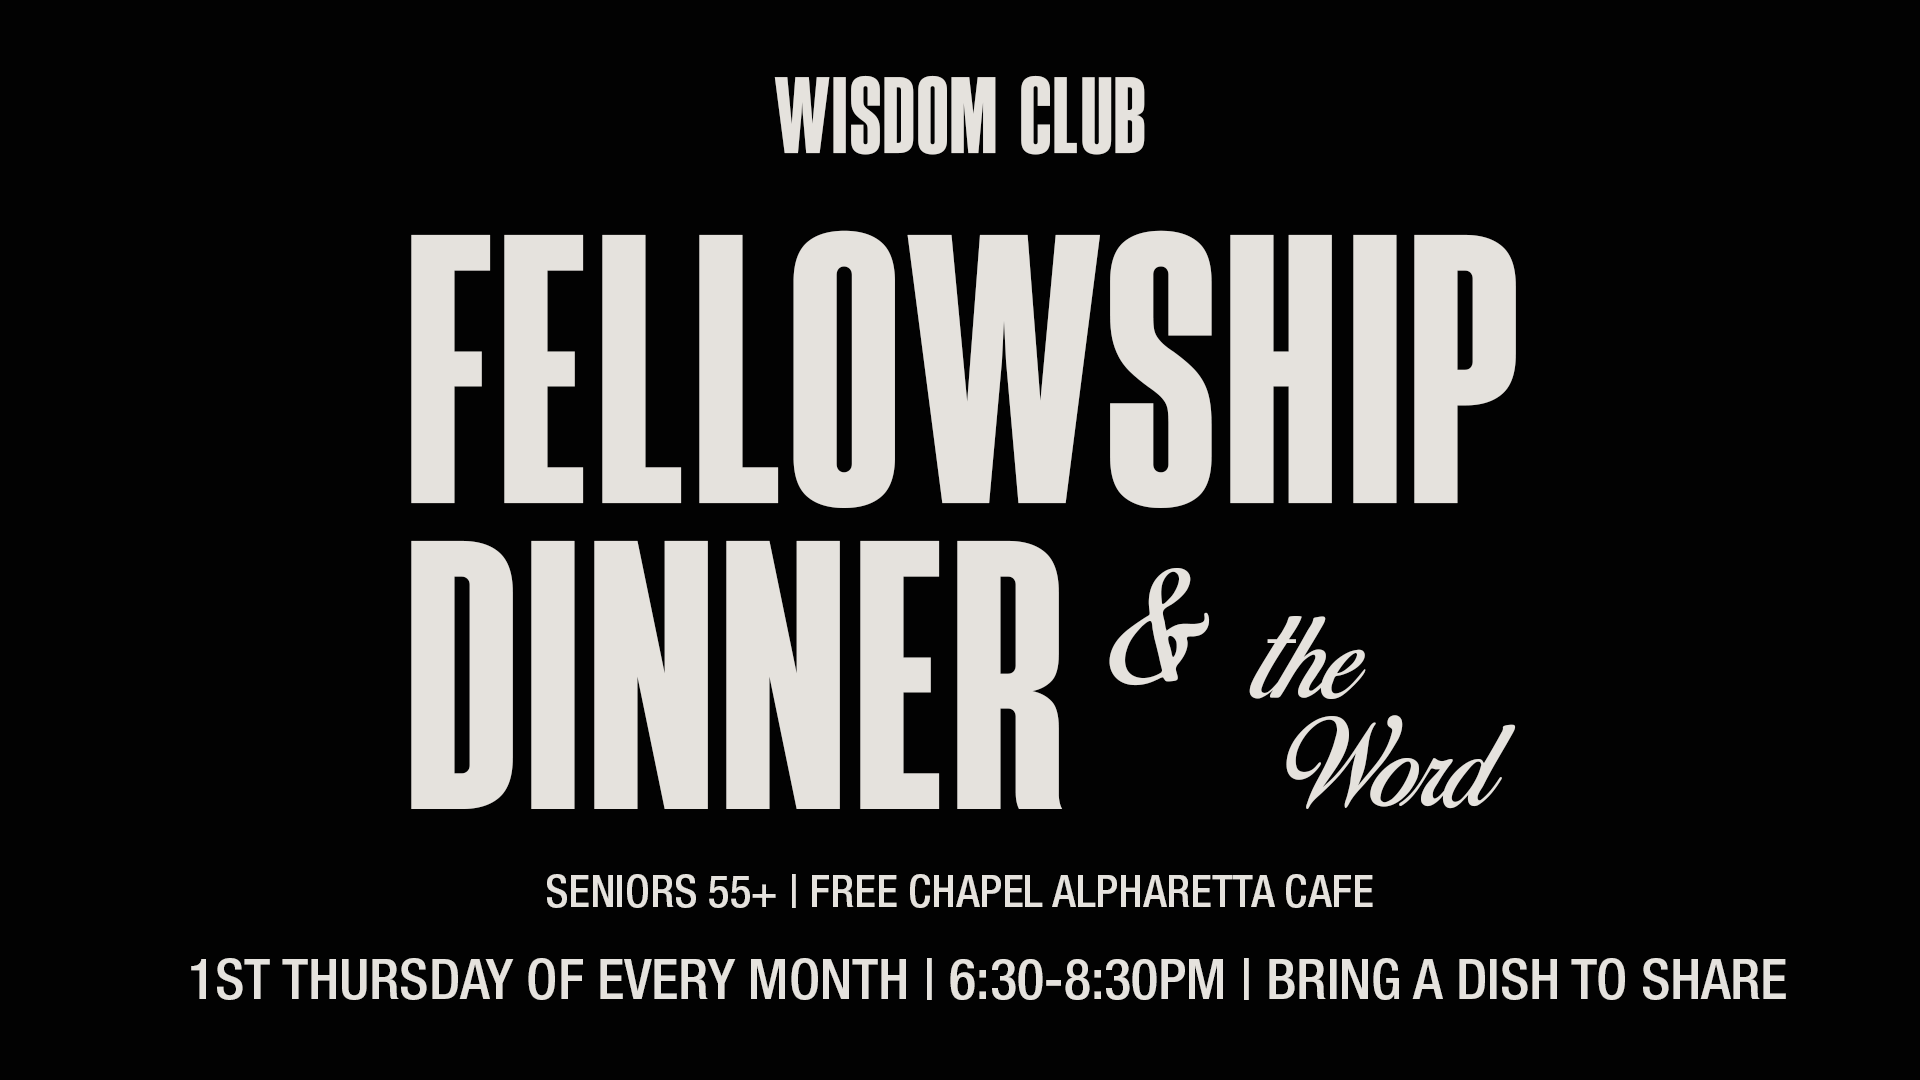 Wisdom Club Fellowship Dinner at the Alpharetta campus